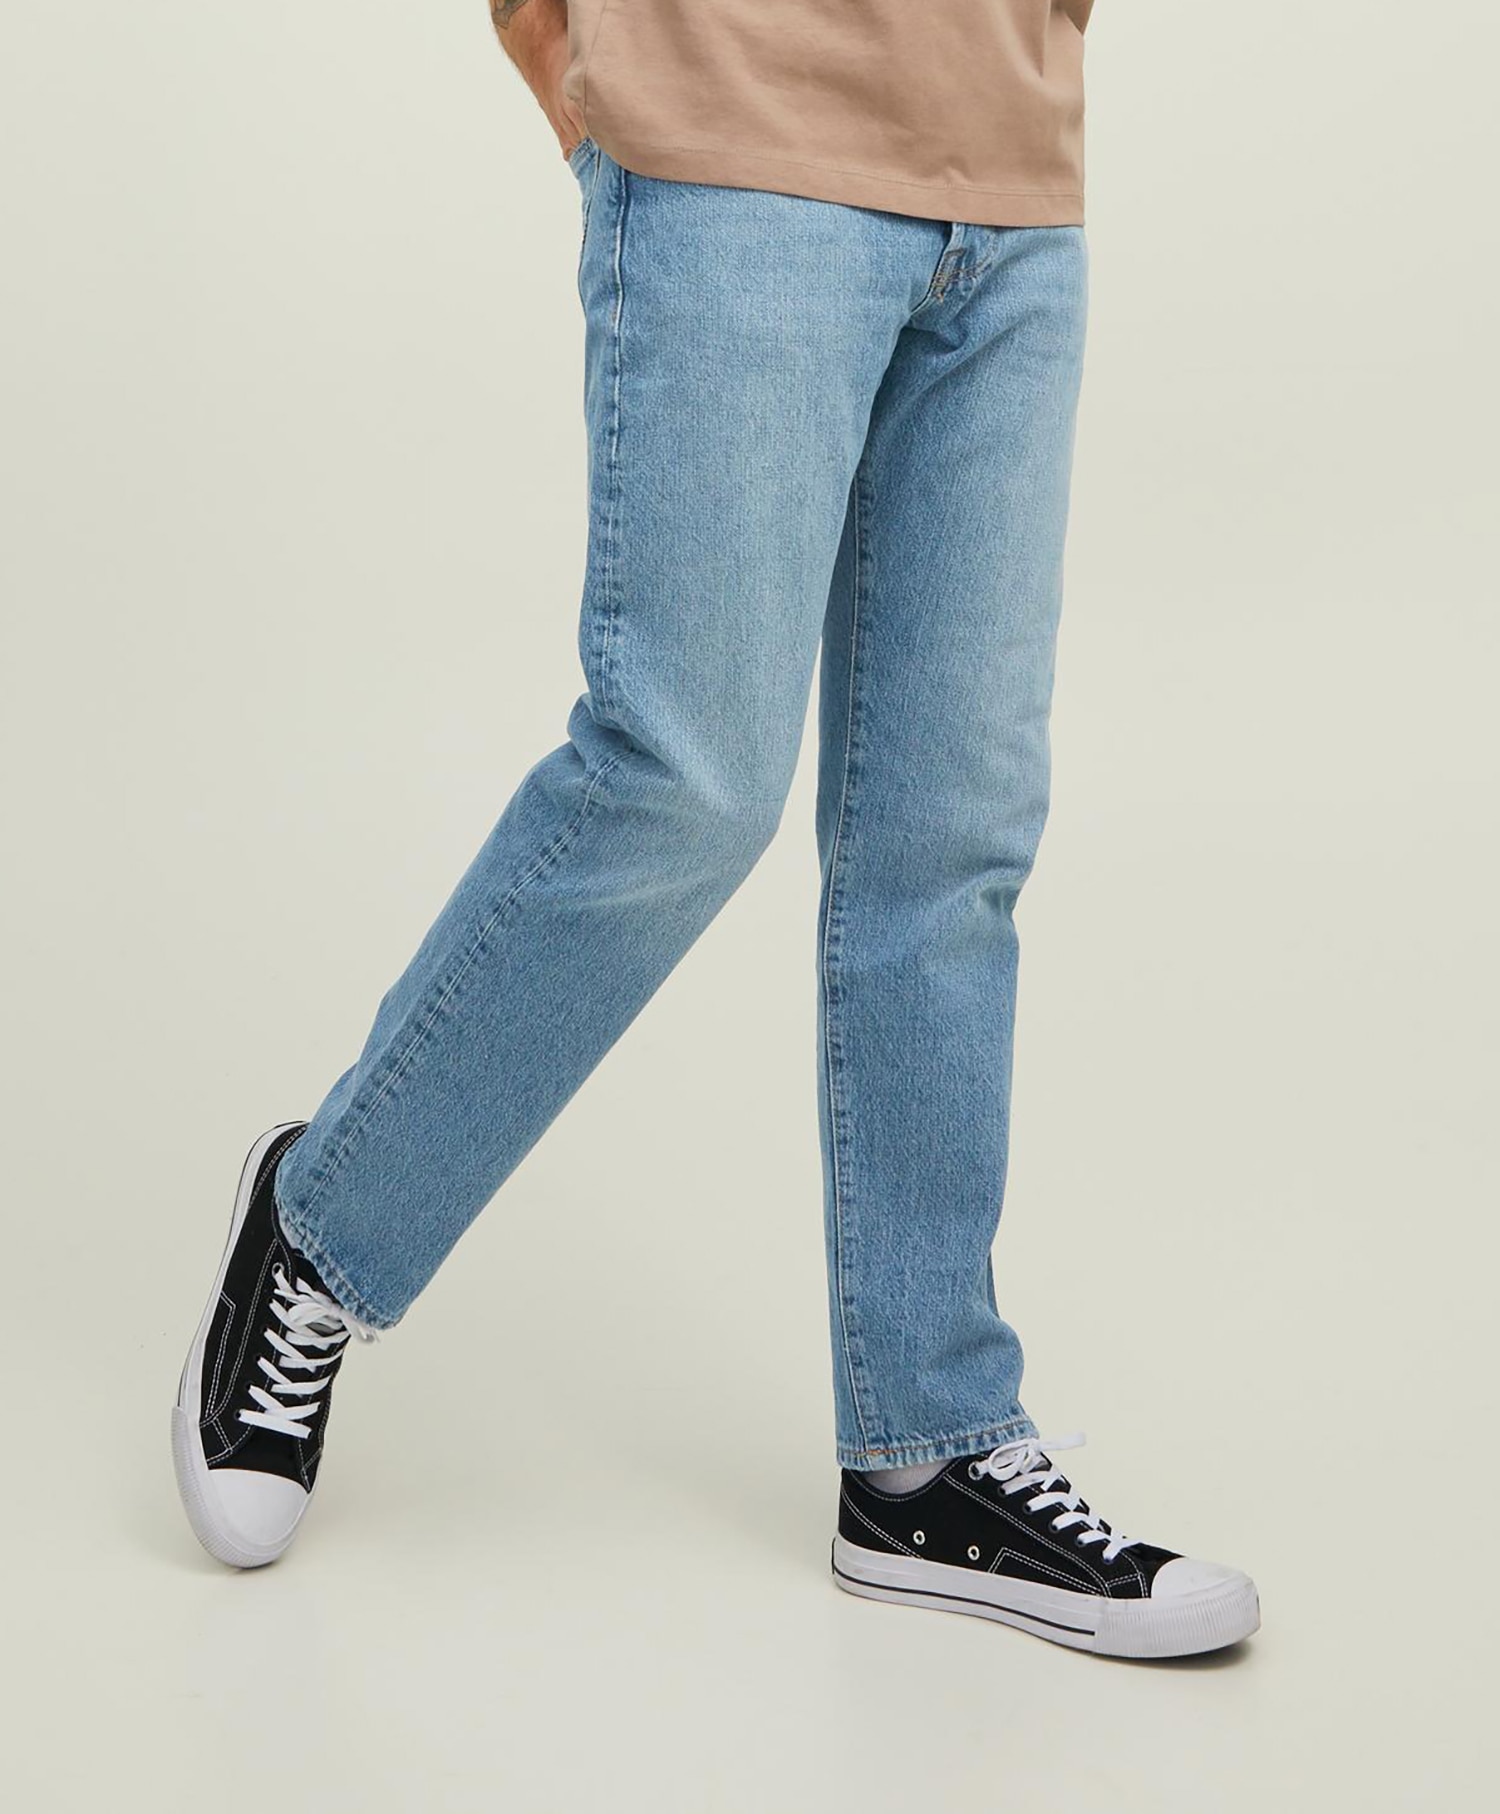 Jack&Jones Chris Cooper jeans 890